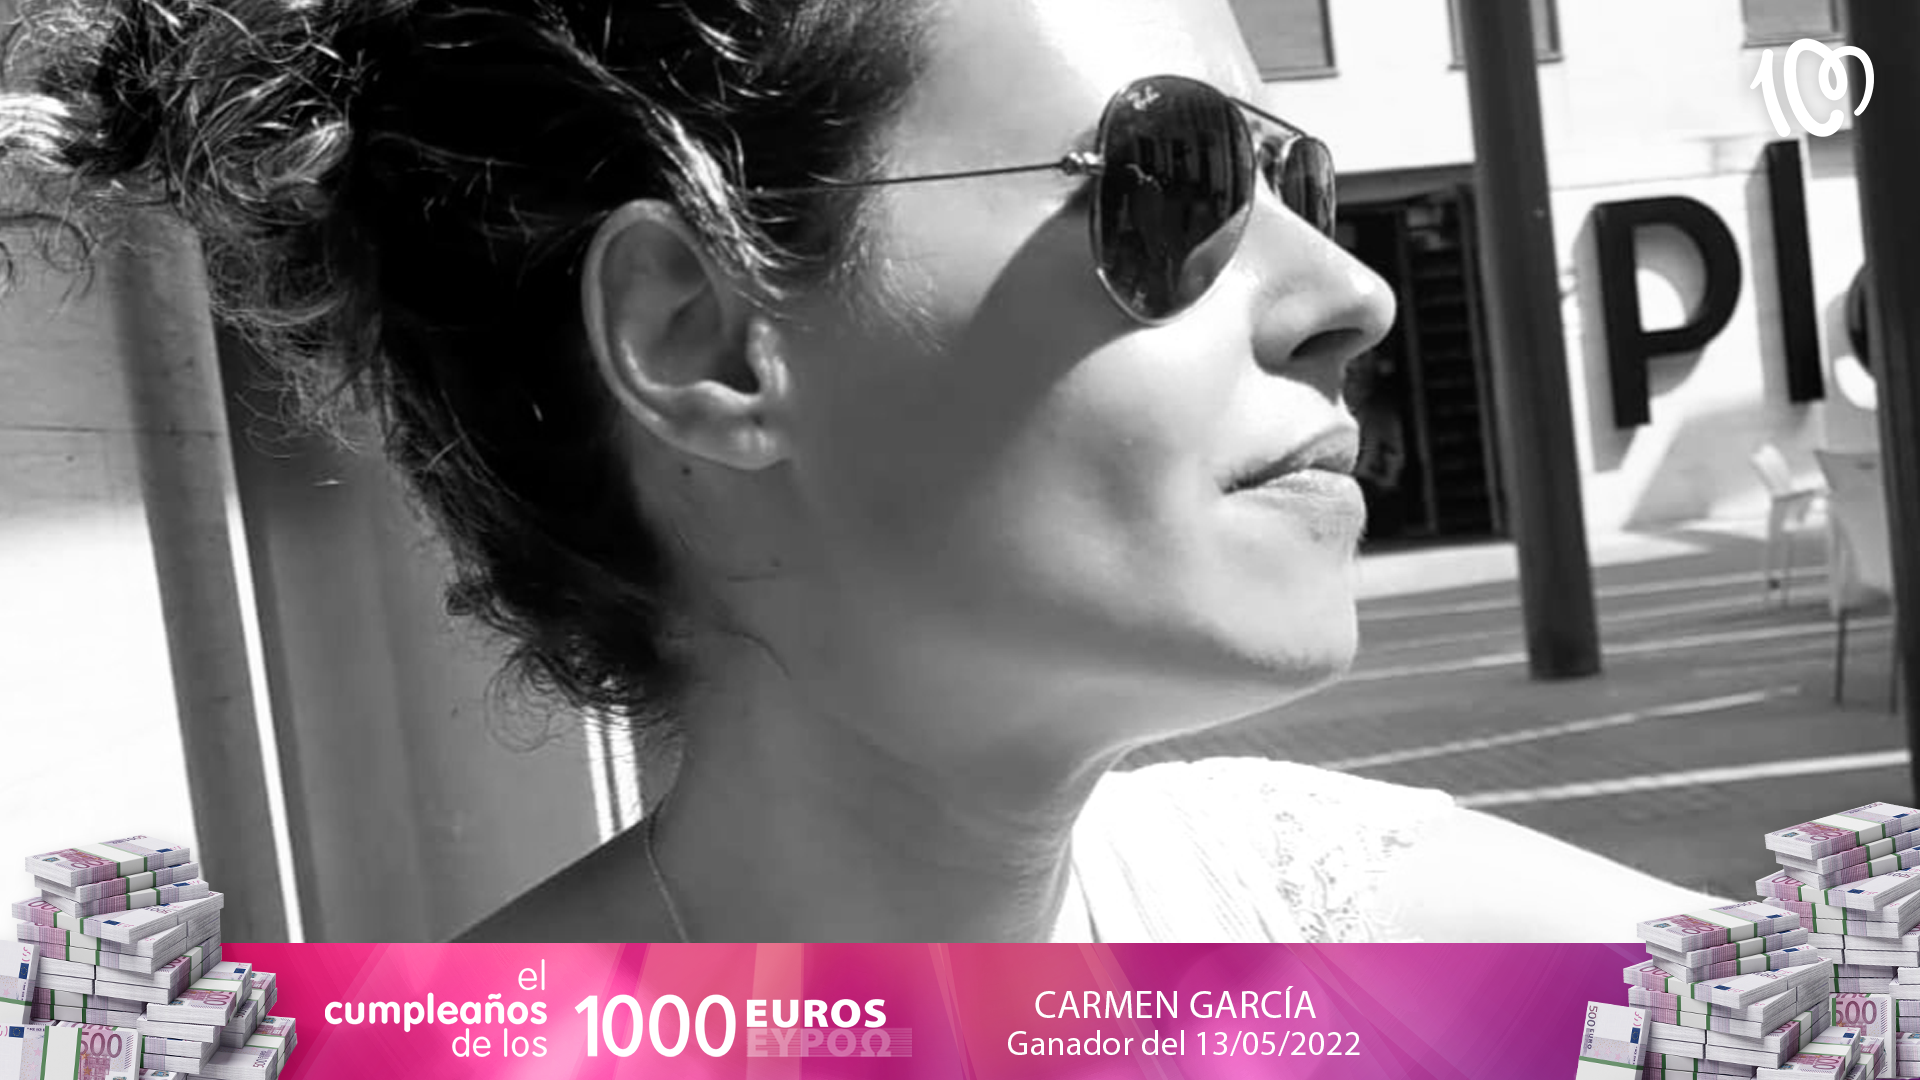 Carmen gana 2.000 euros en CADENA 100: "Lo disfrutaré con mis amigas"